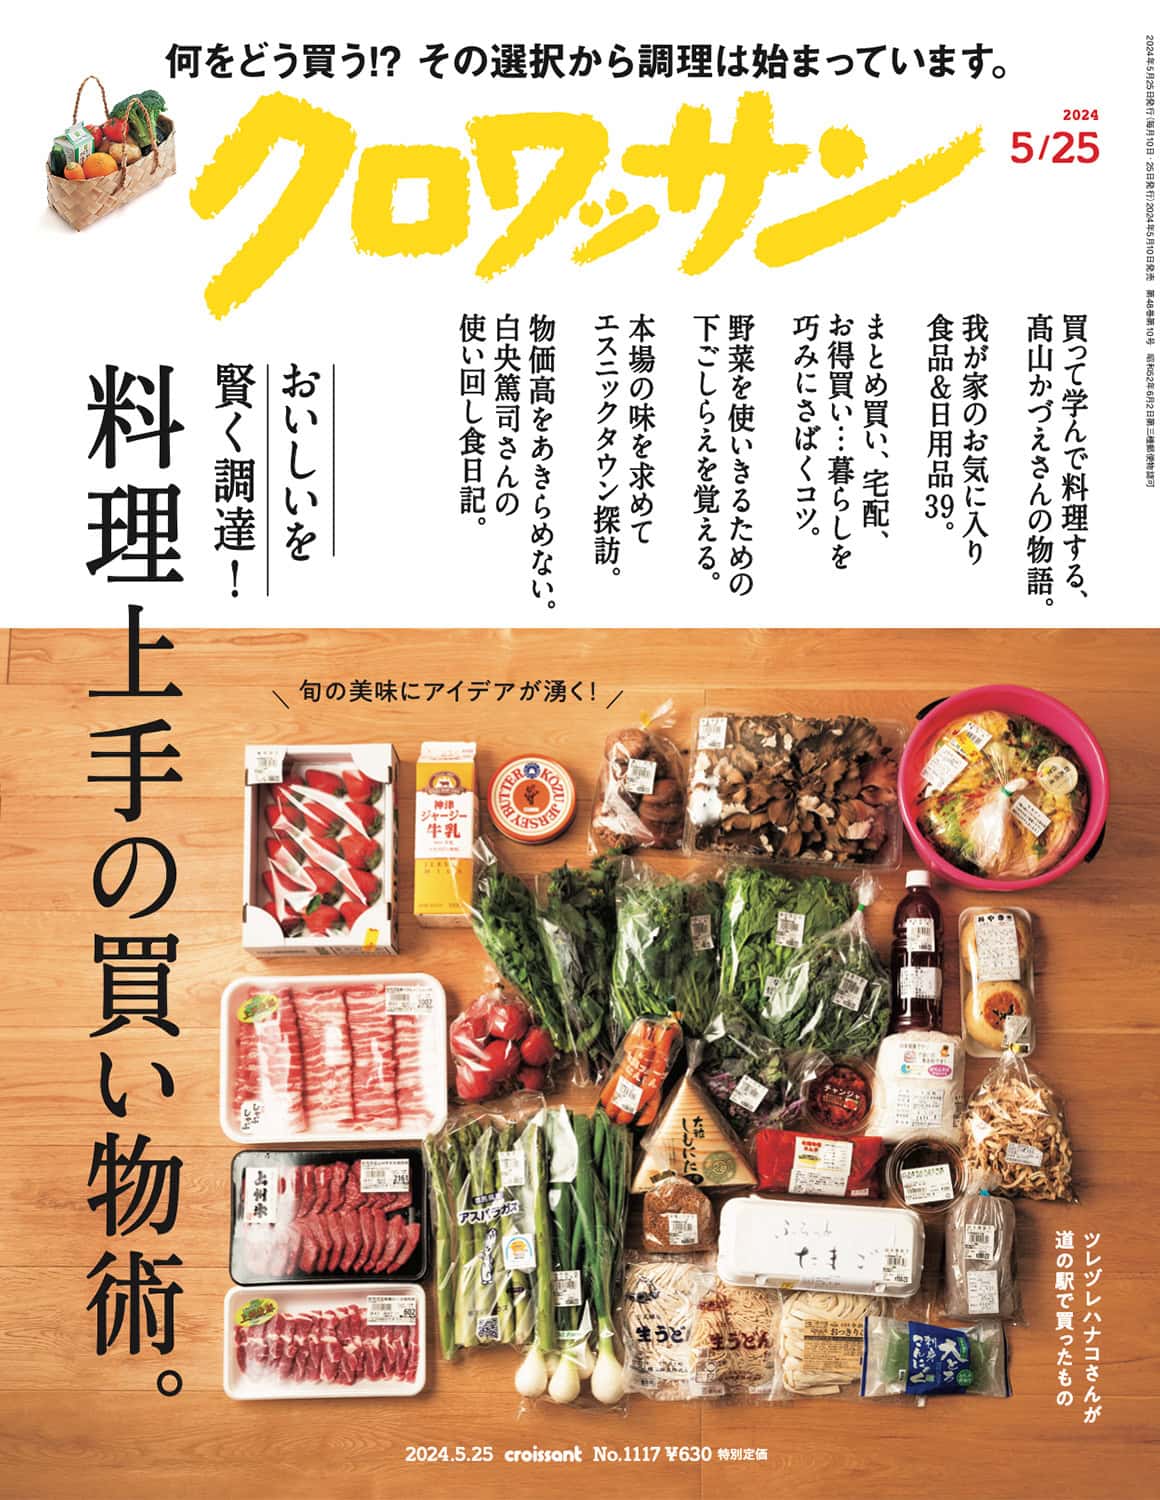 5月10日発売の『クロワッサン』最新号は「料理上手の買い物術。」